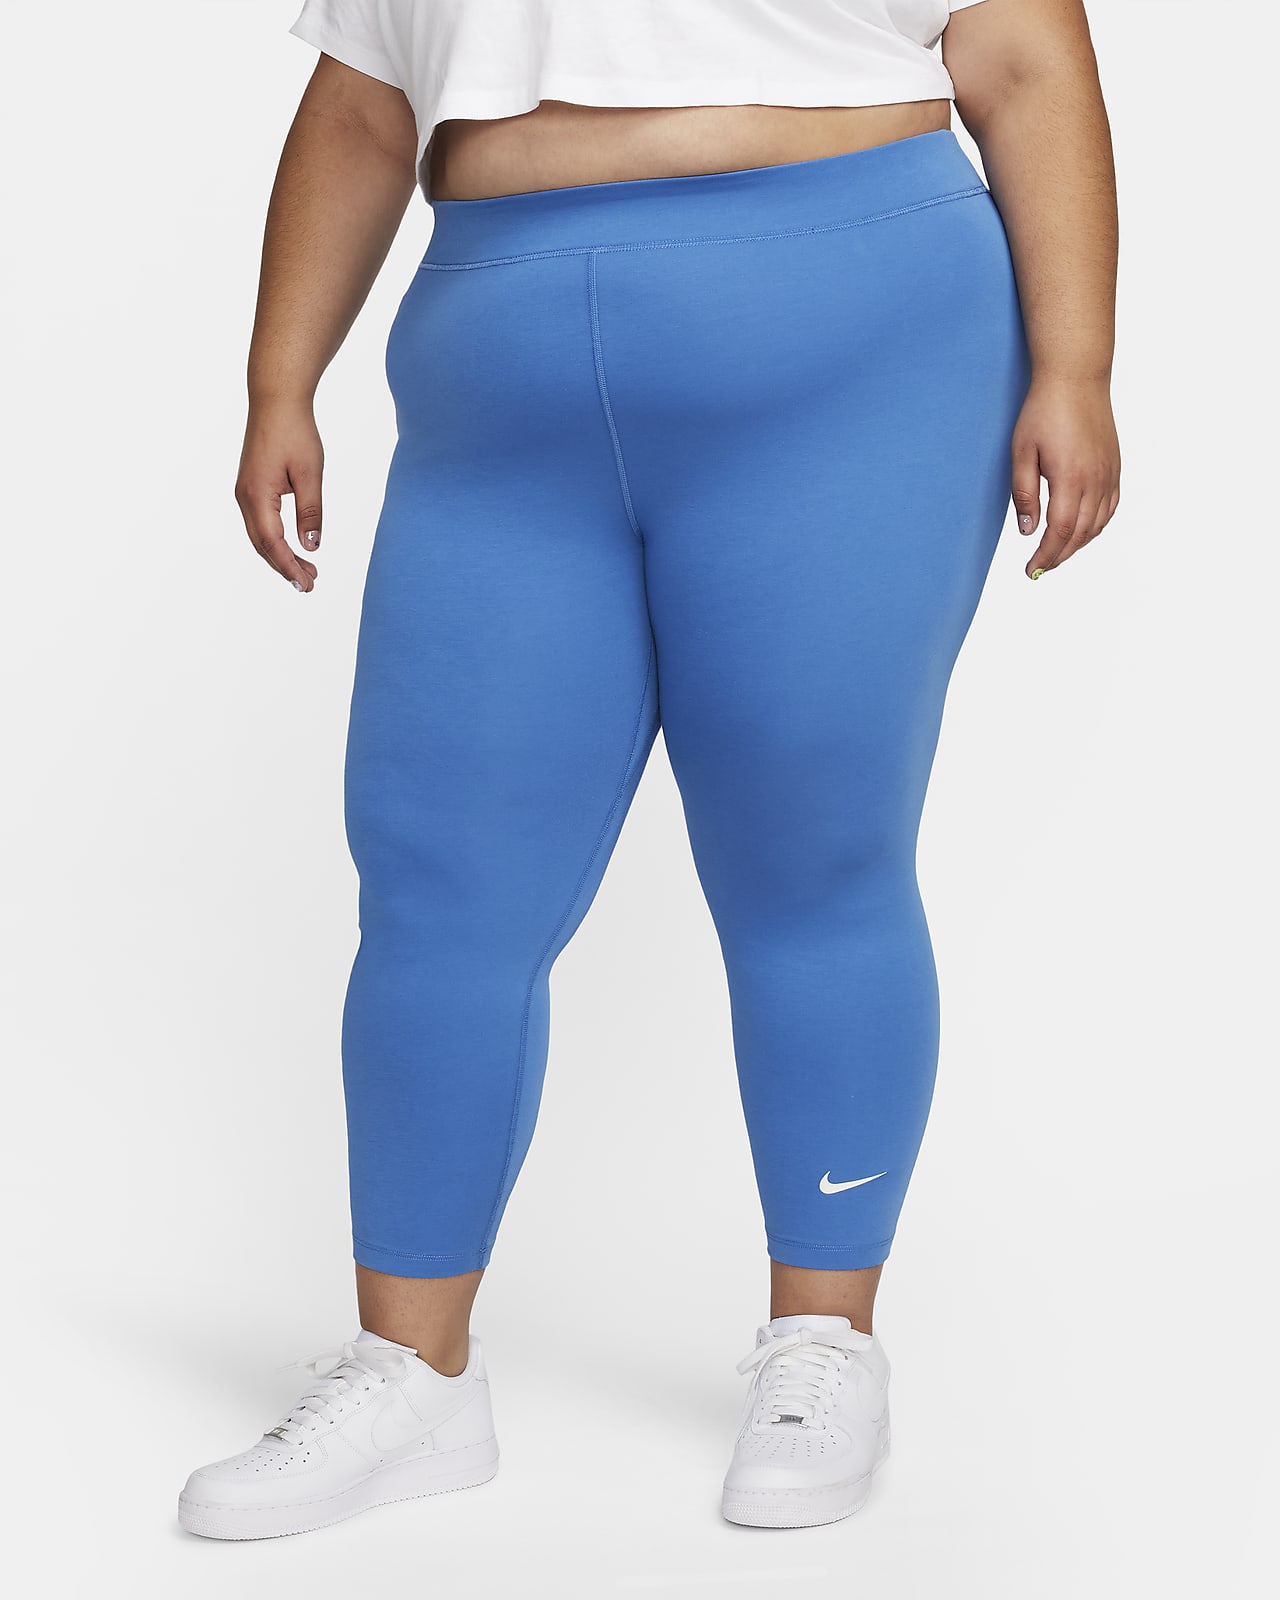 Nike Plus Size Walking Underwear.